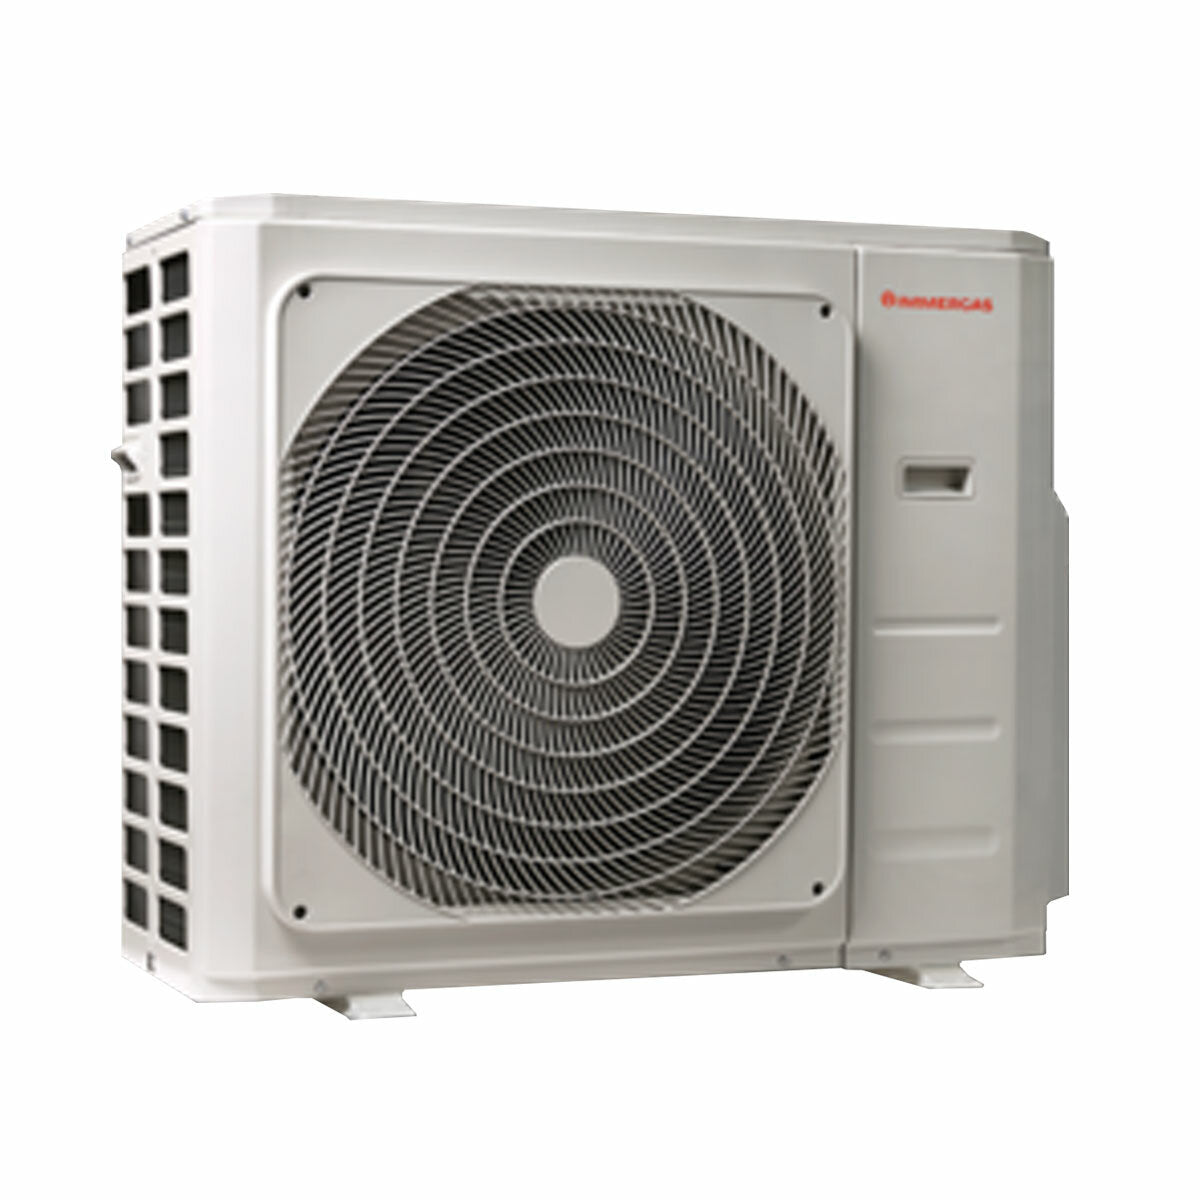 Immergas THOR Dual-Split-Klimaanlage 12000+12000 BTU Inverter A++ Außeneinheit 5,3 kW 